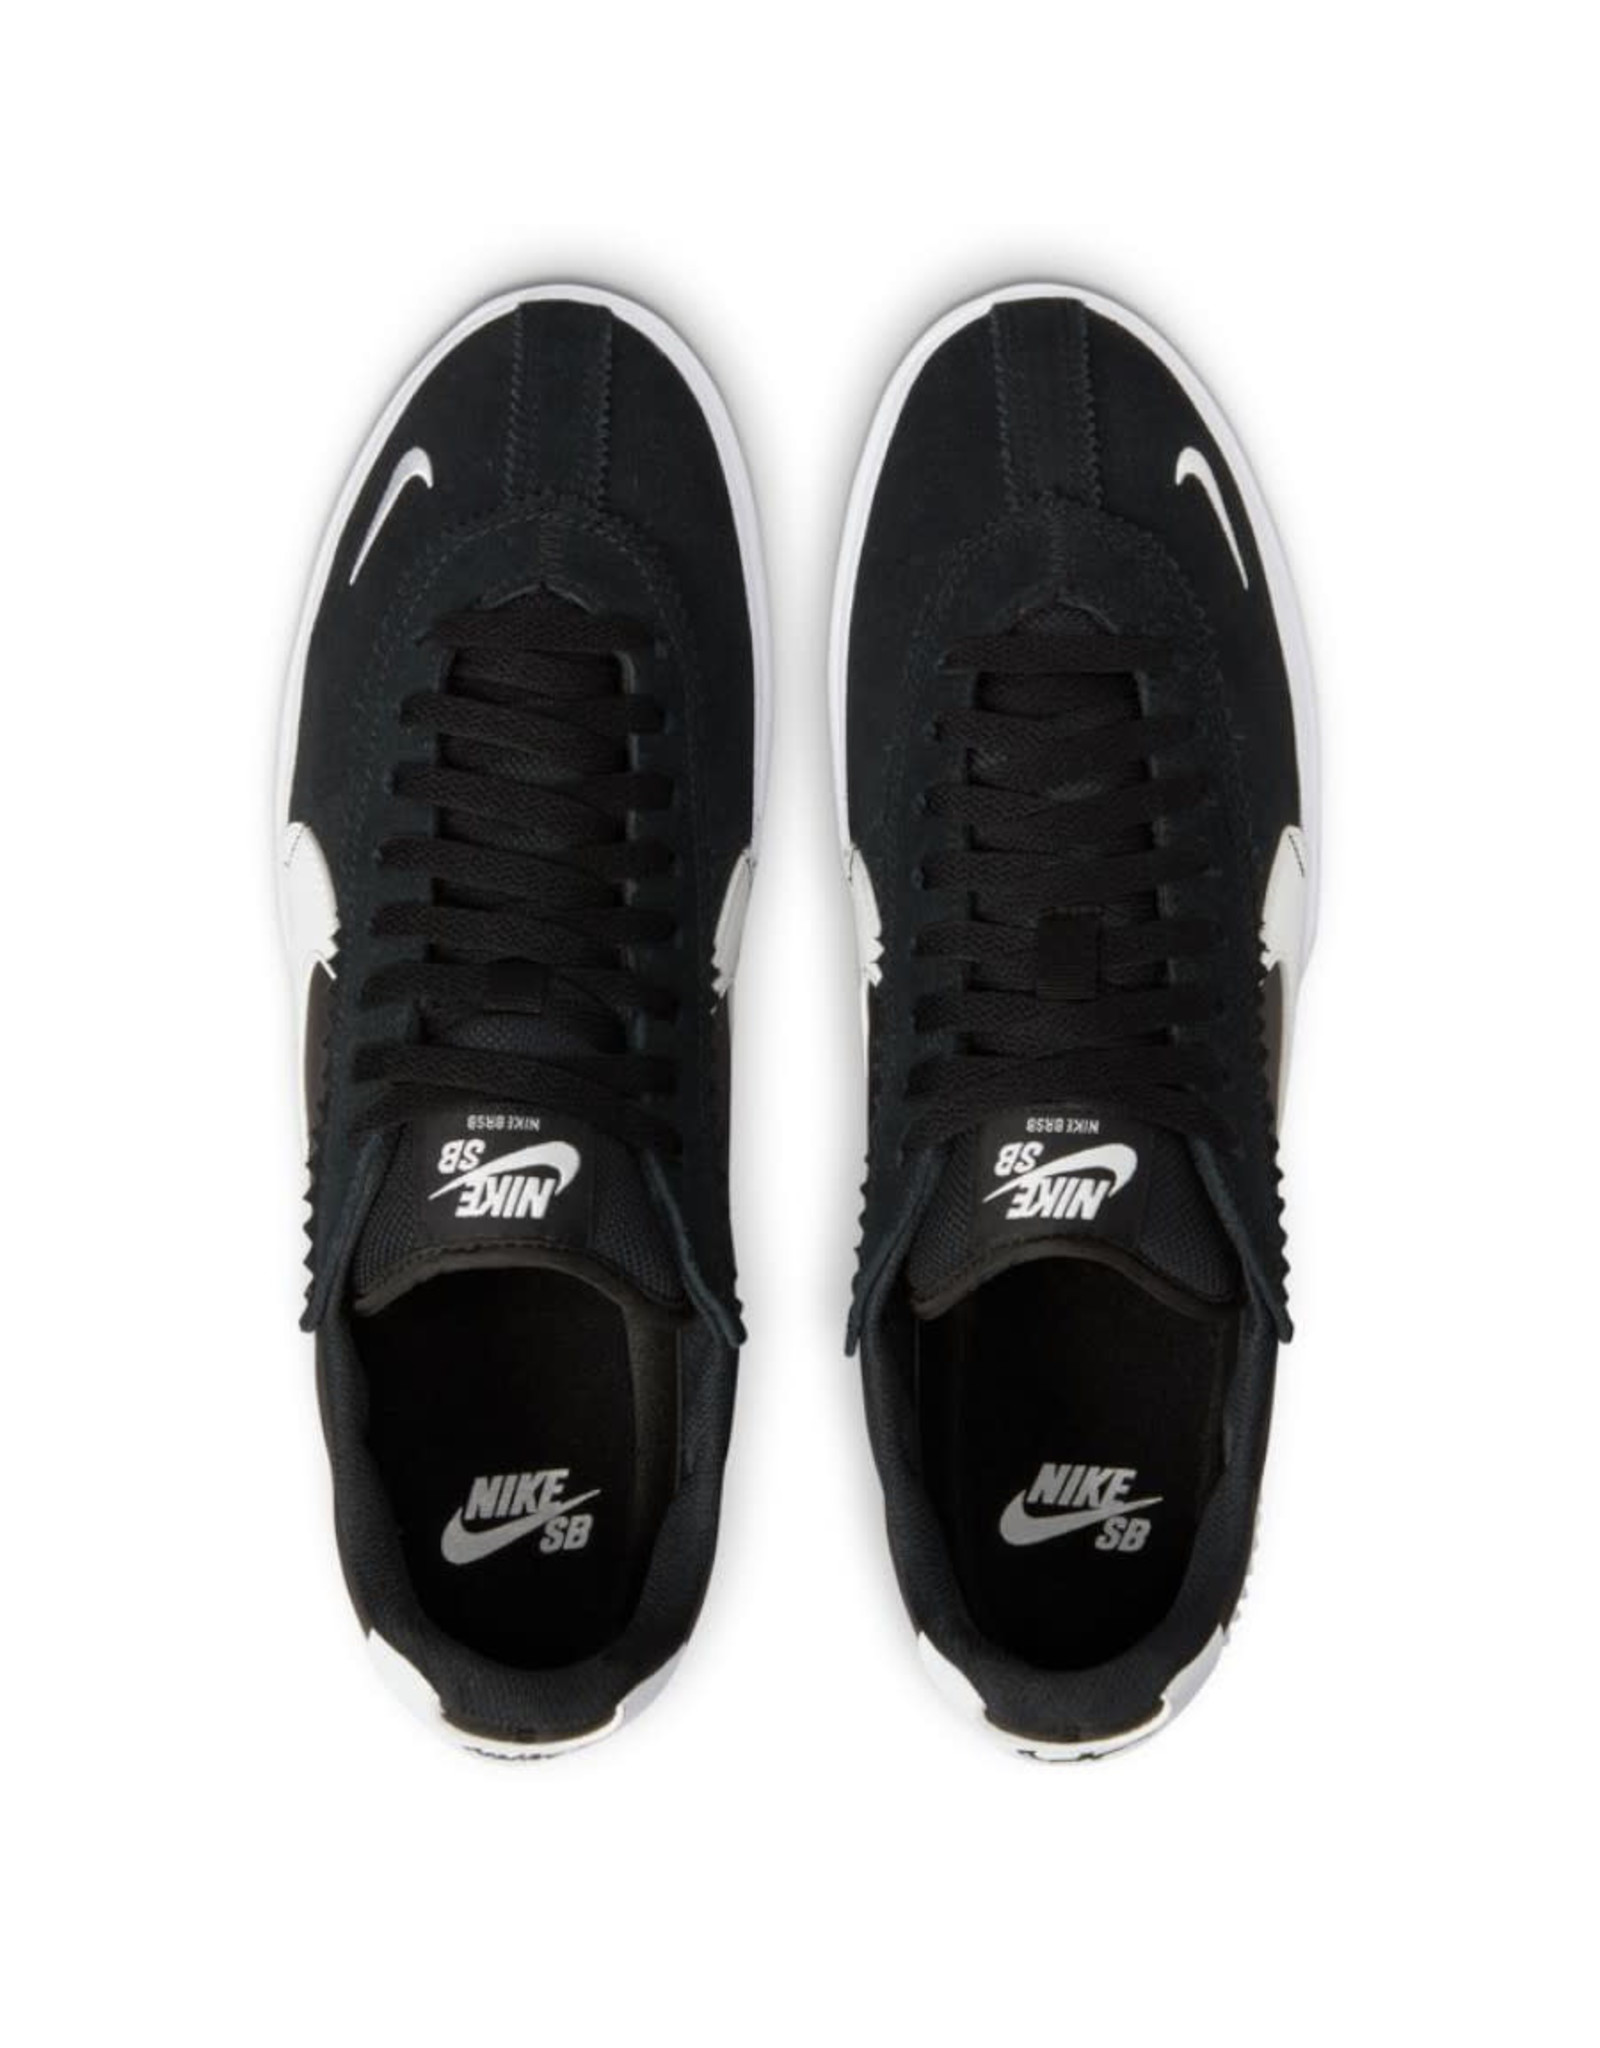 Nike SB Nike SB Shoe BRSB (Black/White)